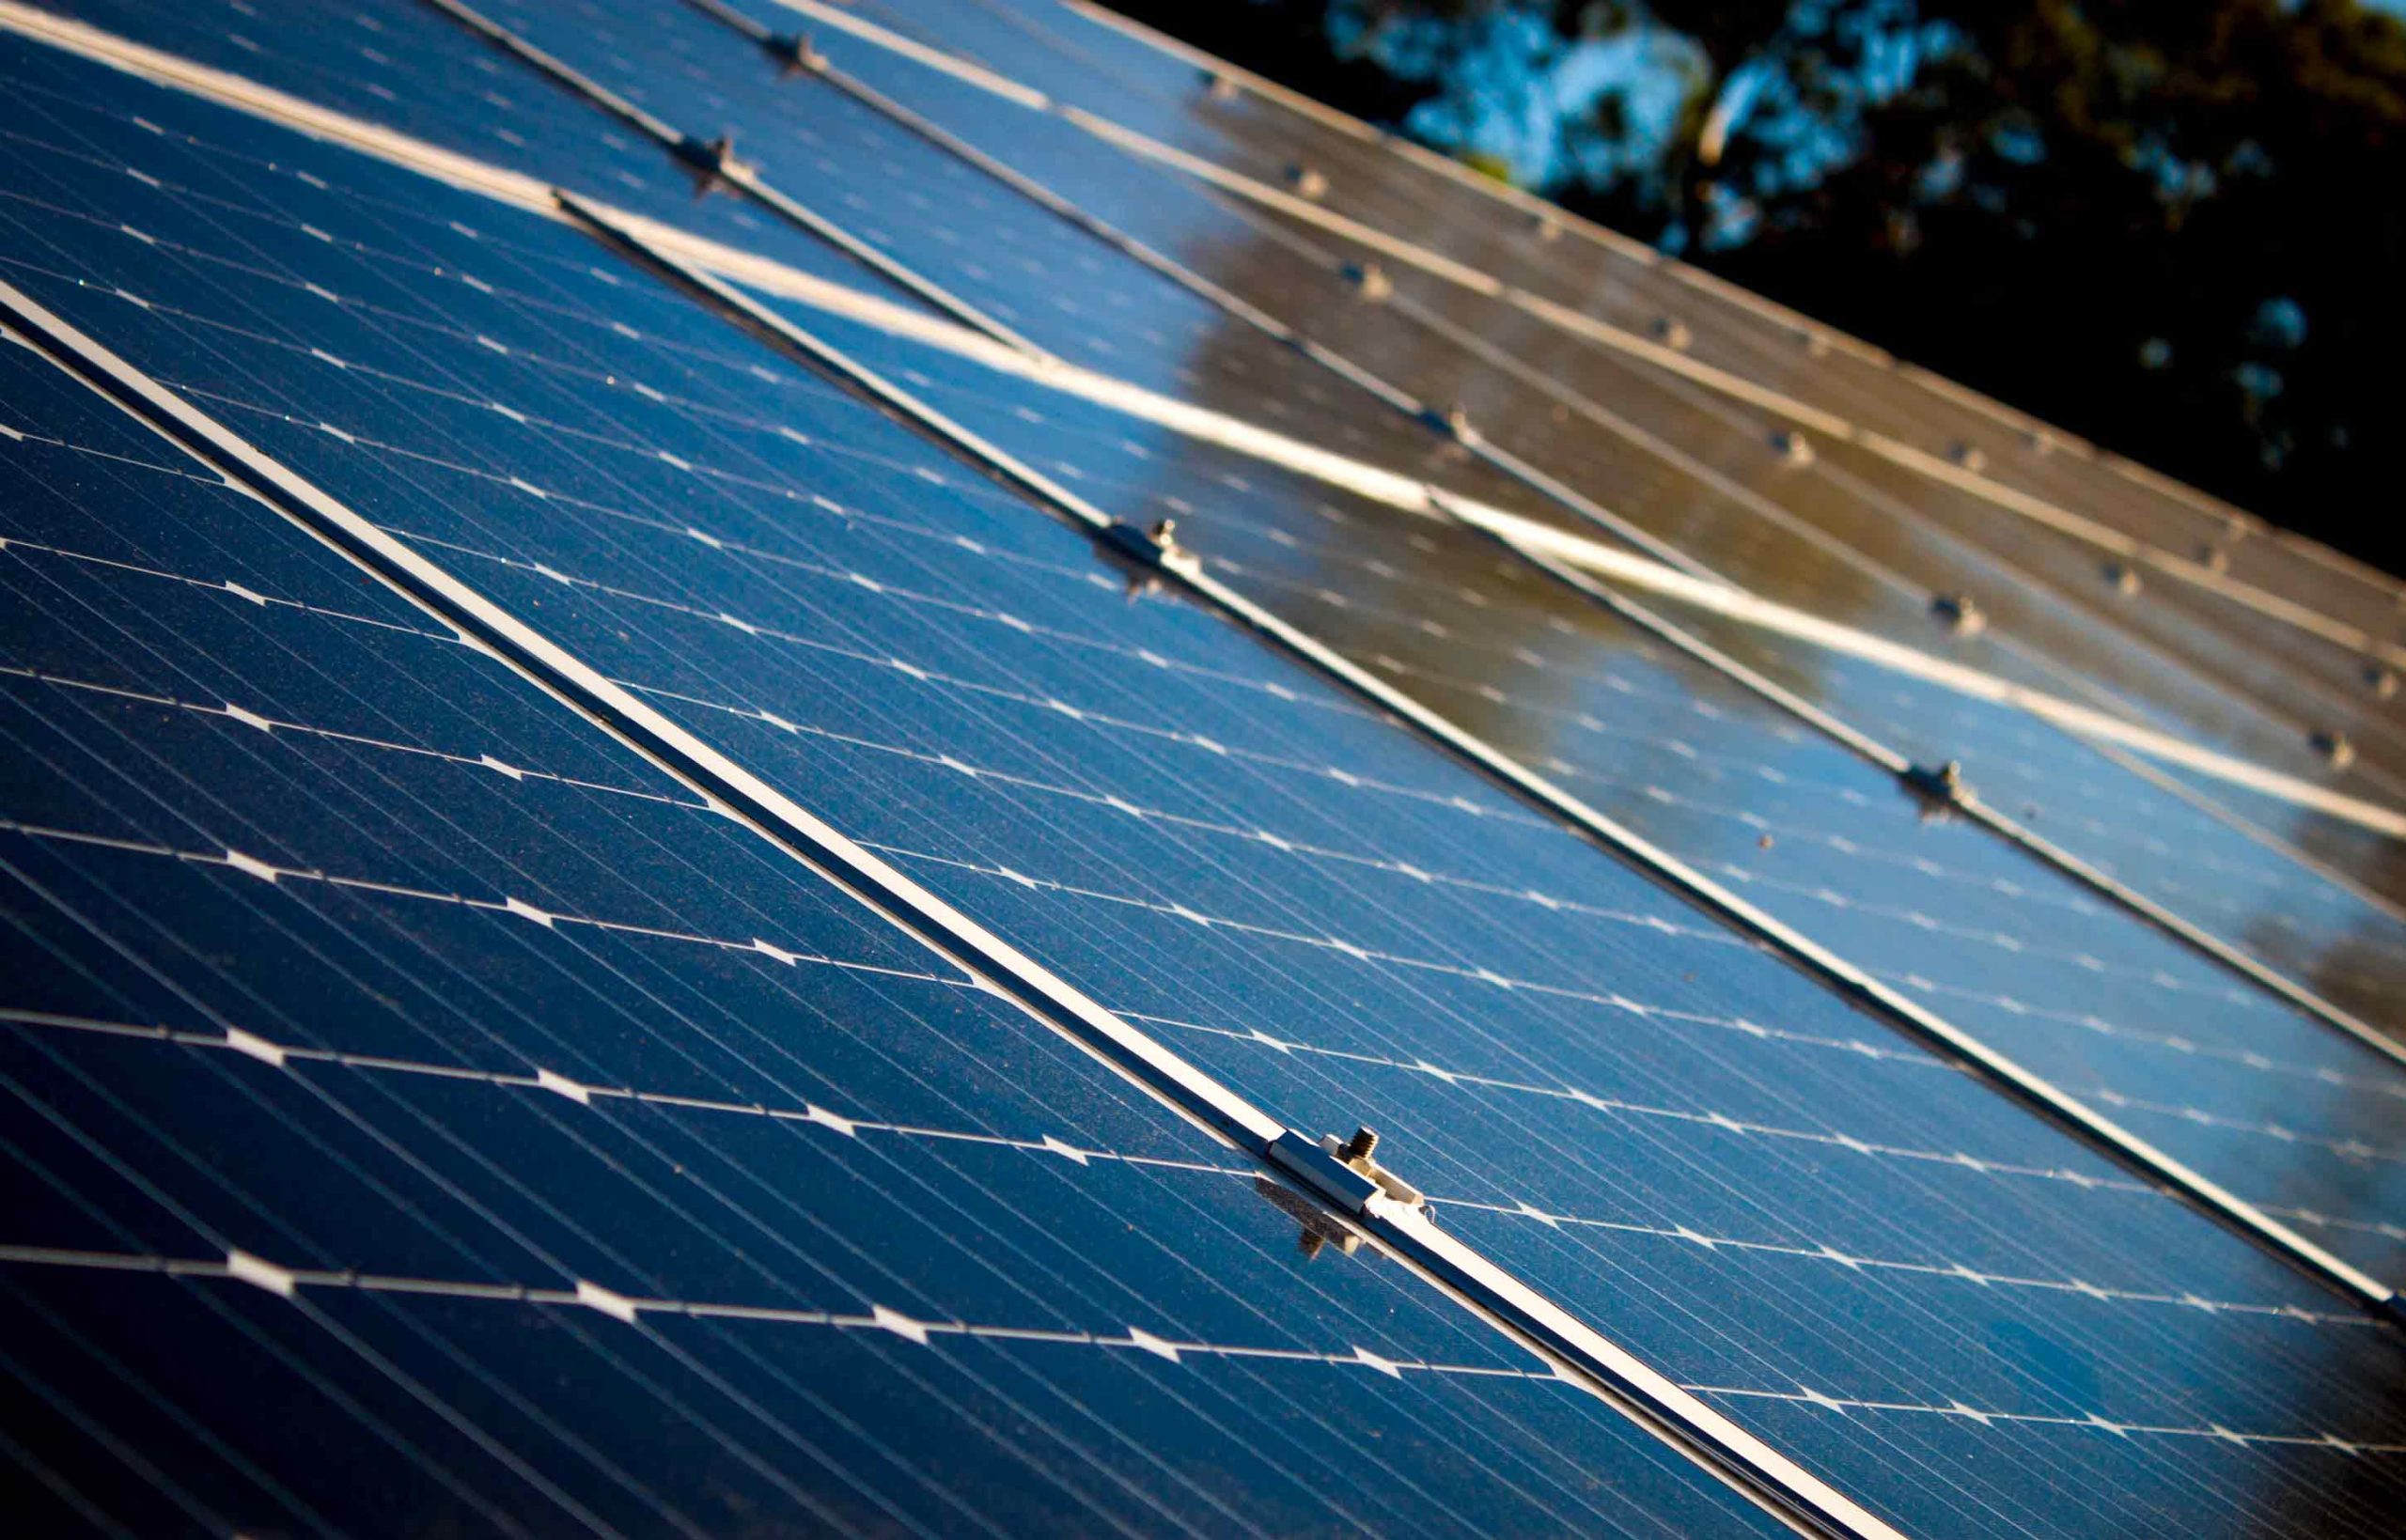 Panneaux solaires : économies, rentabilité et aides